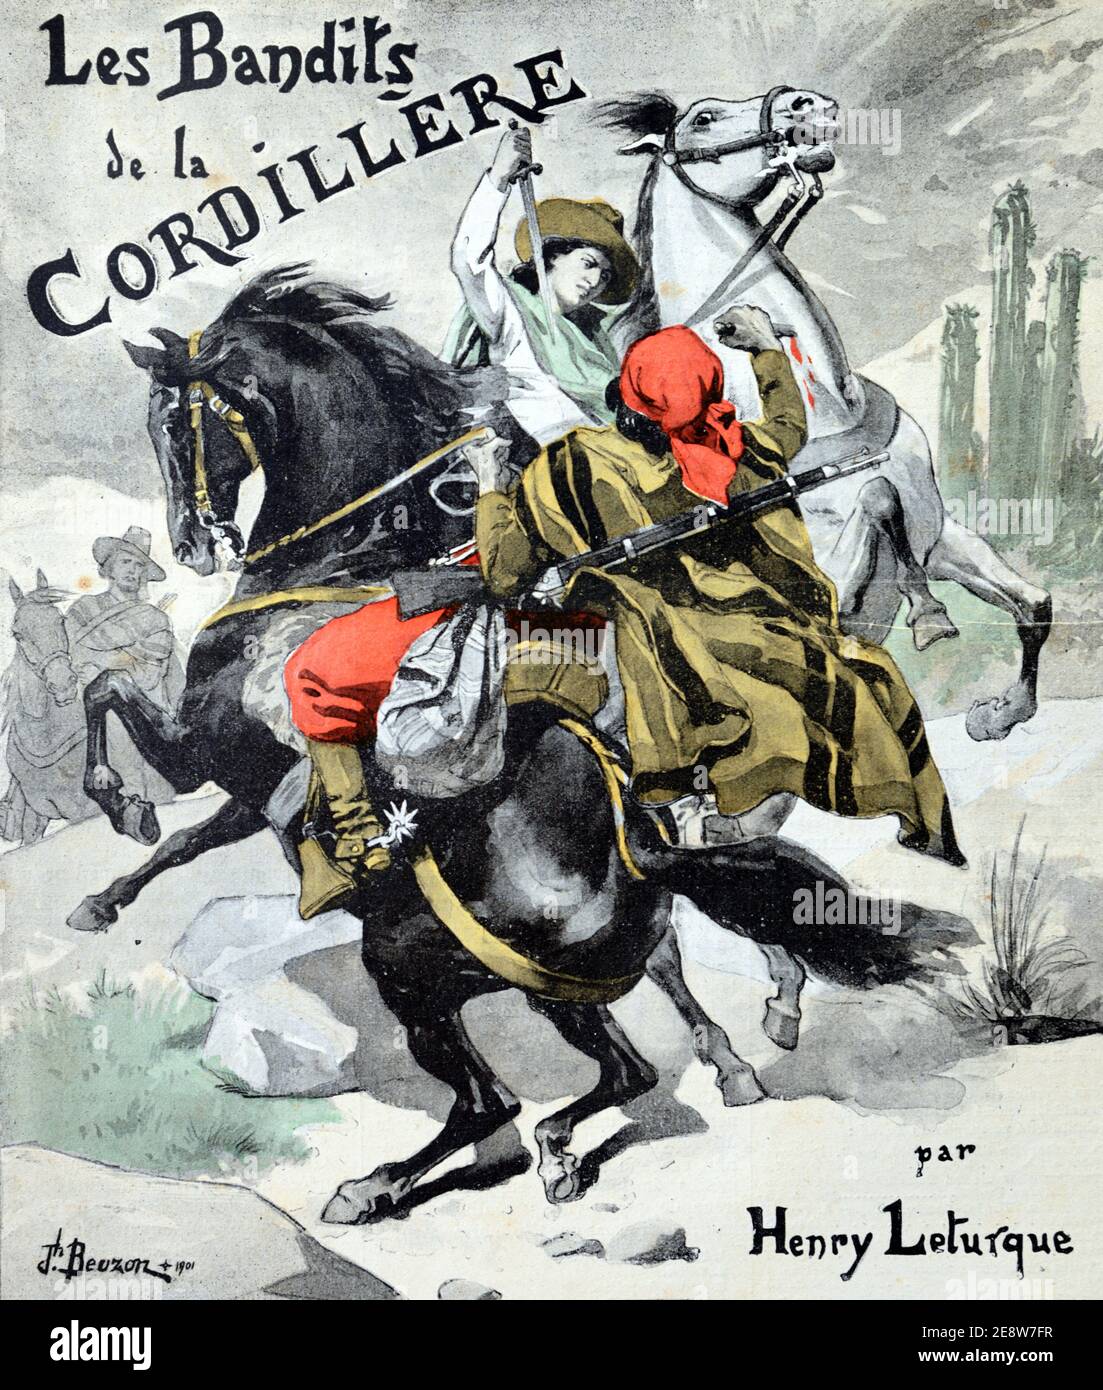 Ancienne couverture de livre 'les bandits de la Cordillière' par Henry Leturque, bandits de la Cordillère Andes Amérique du Sud 1901 Vintage Illustration ou gravure Banque D'Images